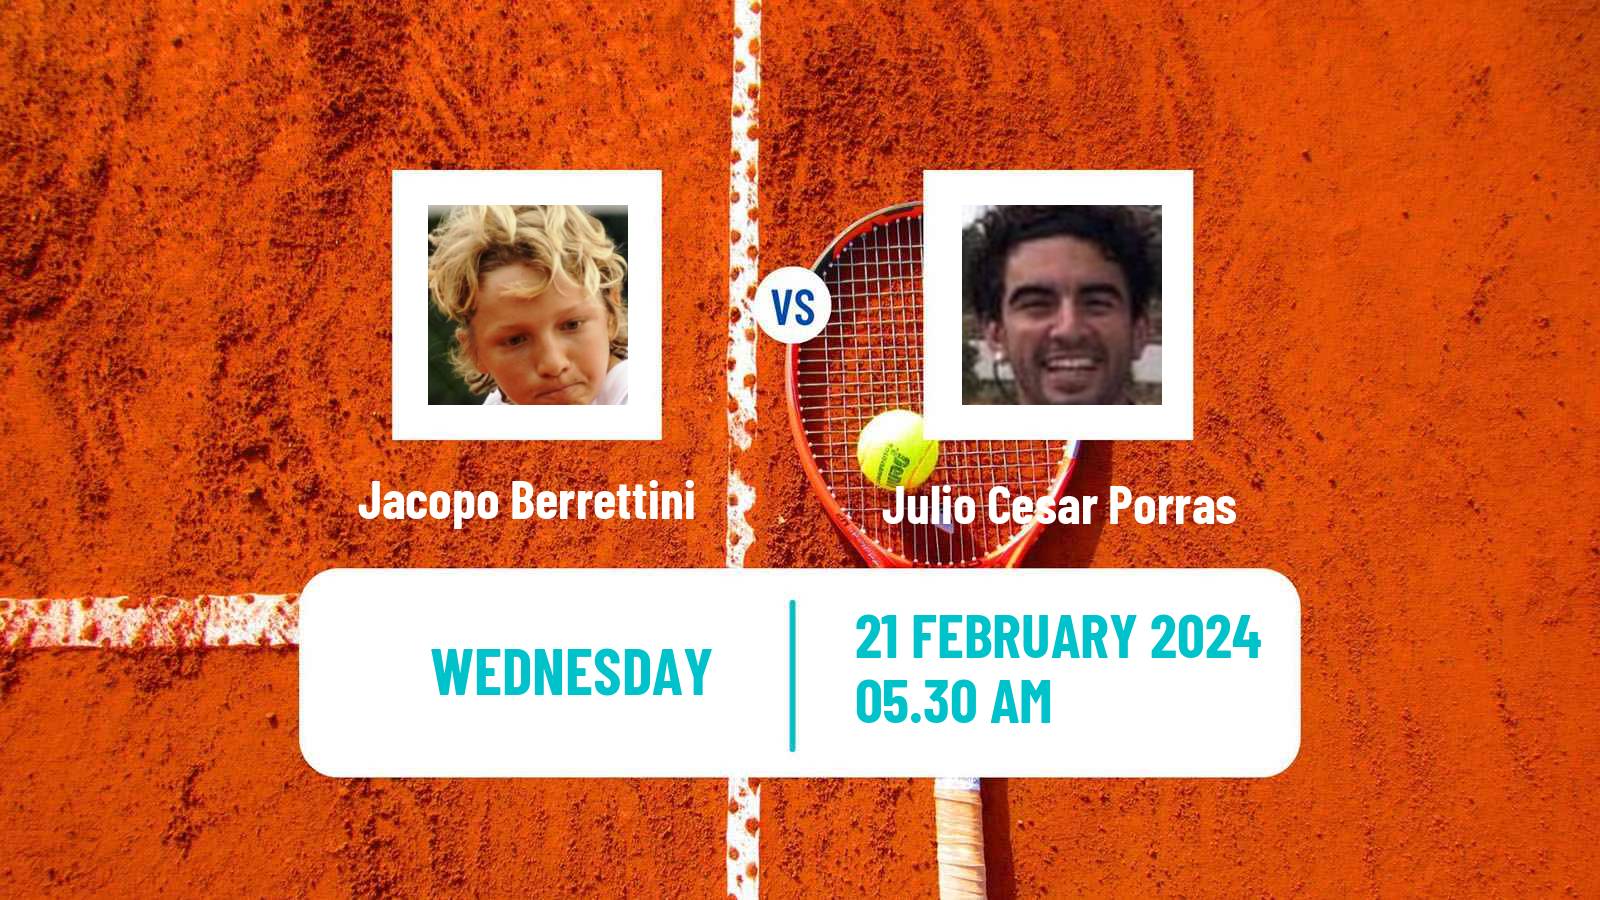 Tennis ITF M25 Vila Real De Santo Antonio 2 Men Jacopo Berrettini - Julio Cesar Porras